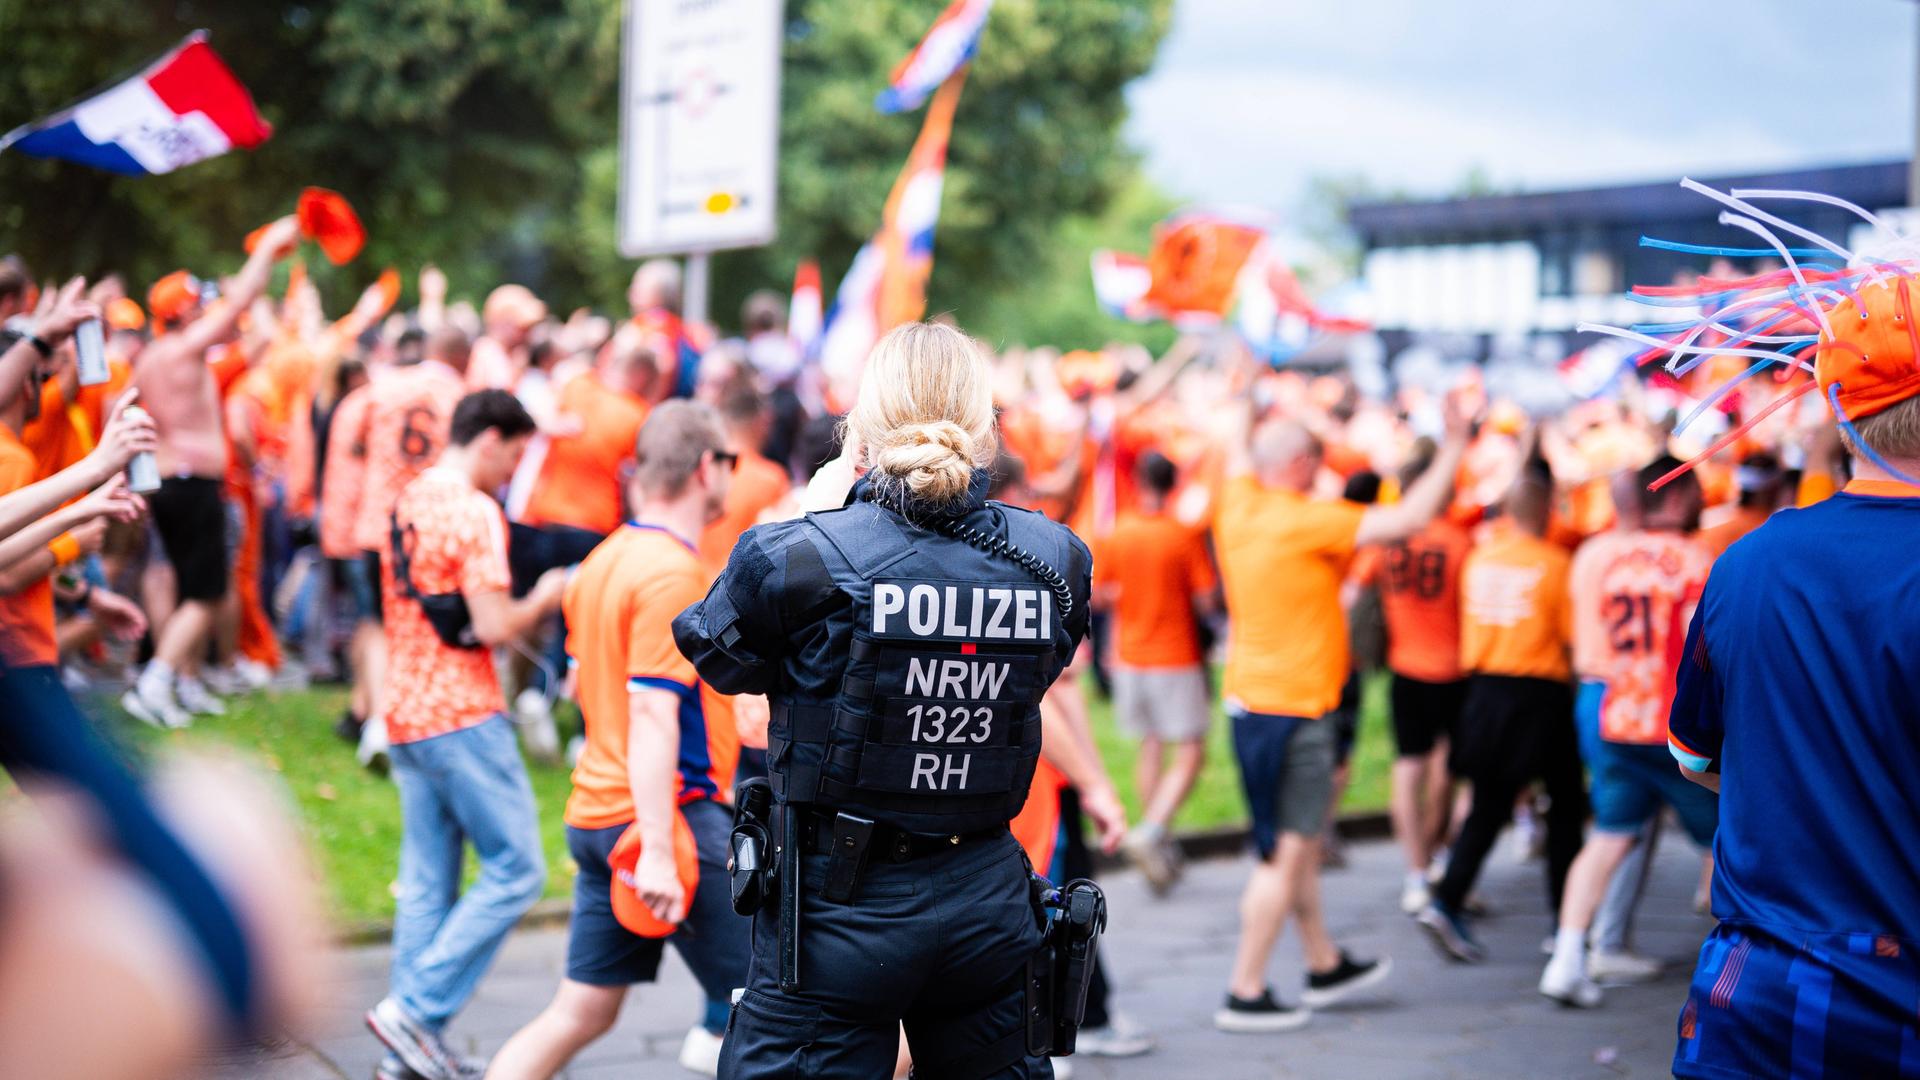 Eine Polizistin steht im Vordergrund; man sieht sie von hinten. Dahinter unscharf eine große Menge an Fans in orangebarbenen Trikots, die vorbeilaufen. 